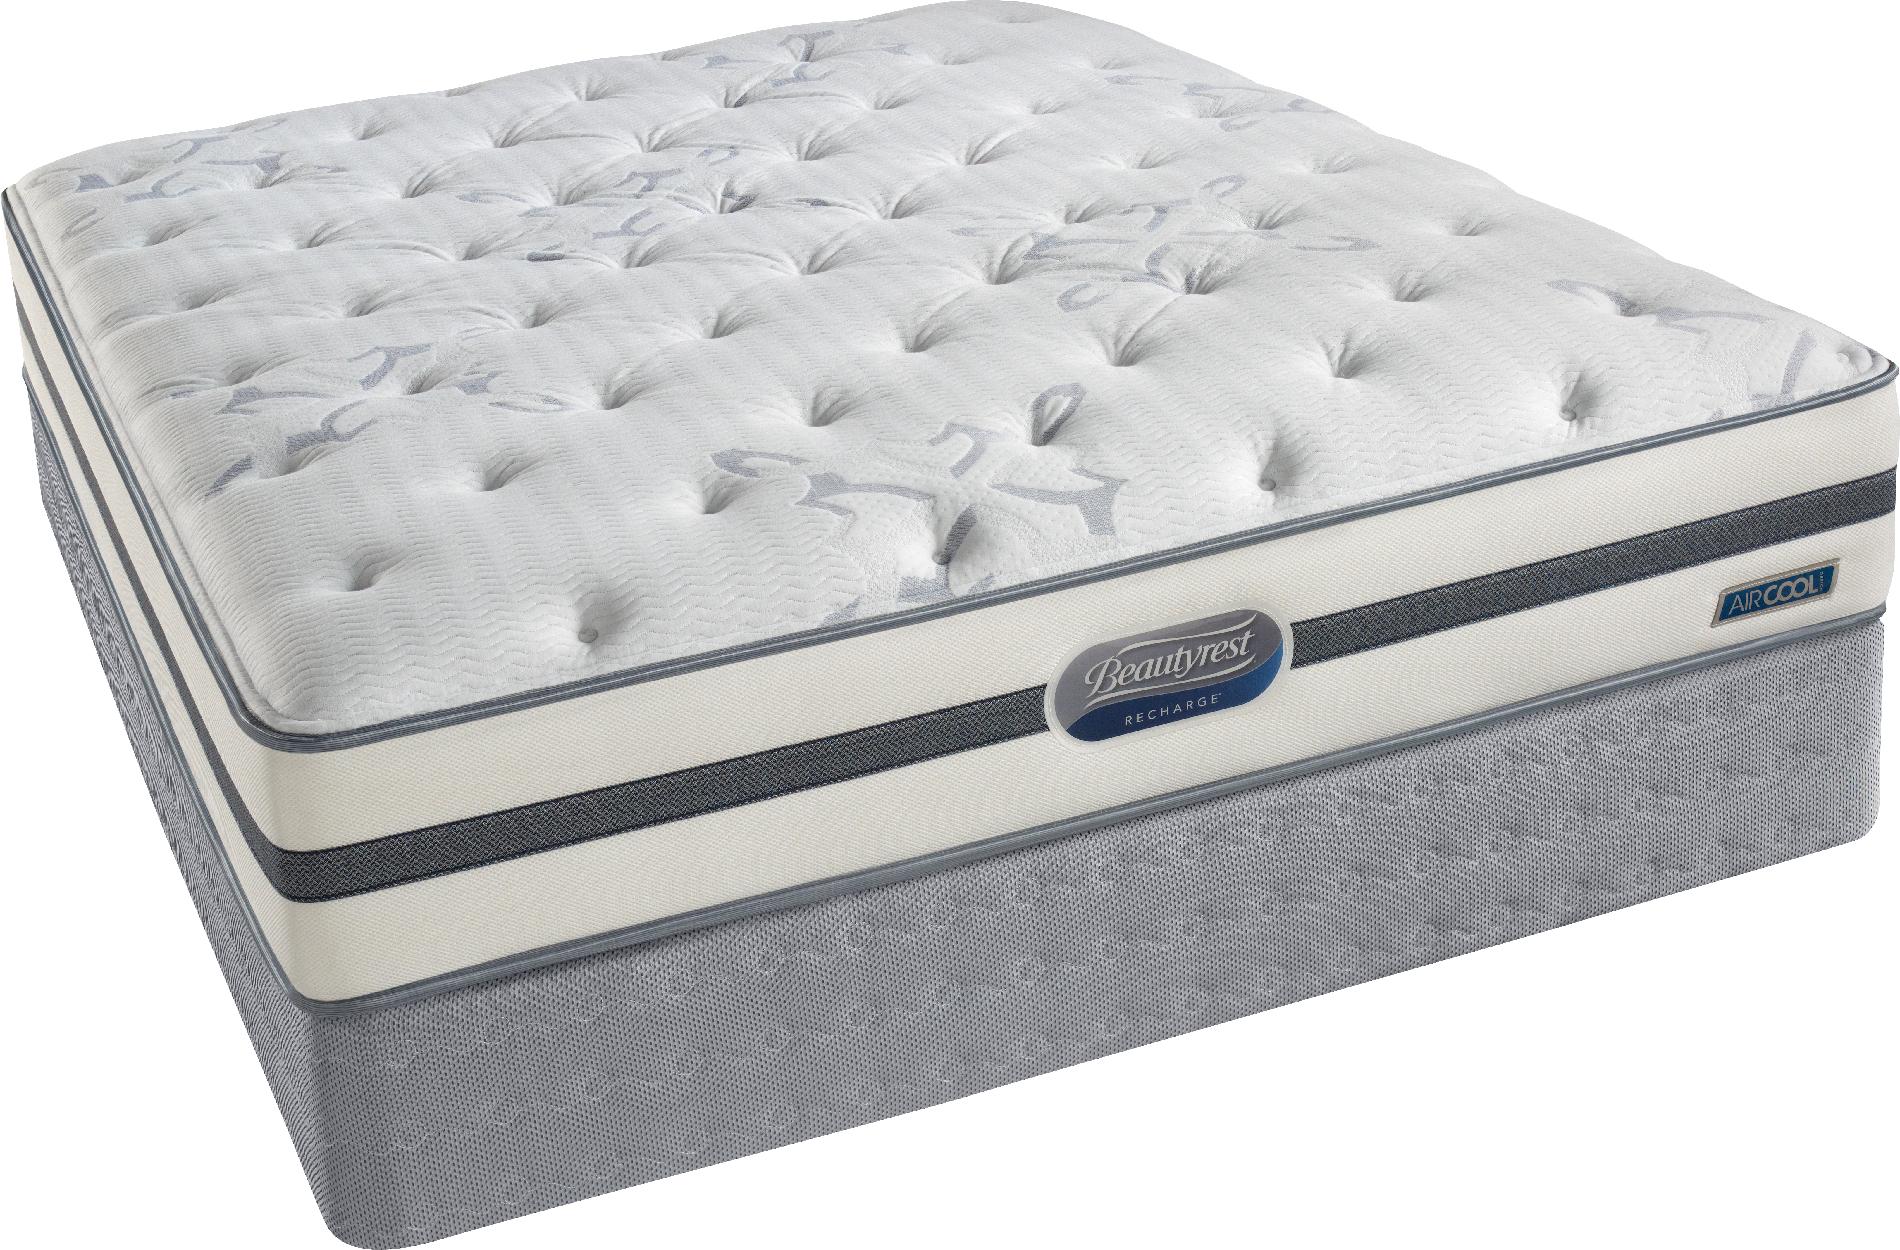 sears memory foam mattress twin